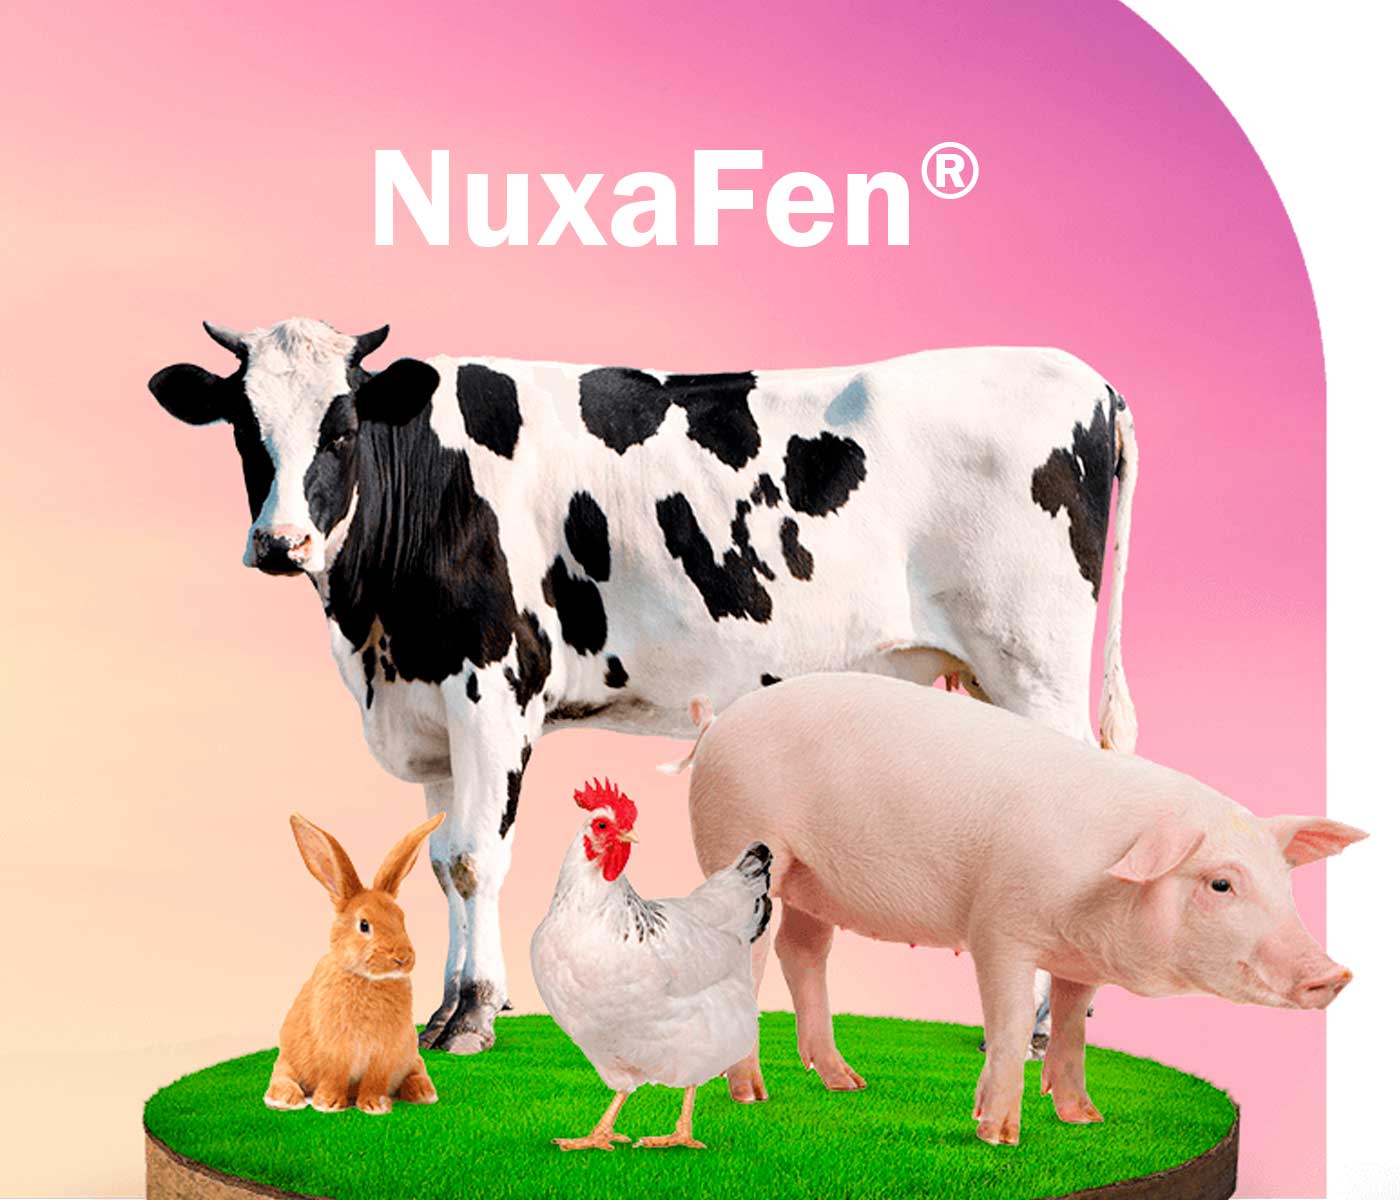 NuxaFen®: innovación antioxidante rentable para la nutrición animal